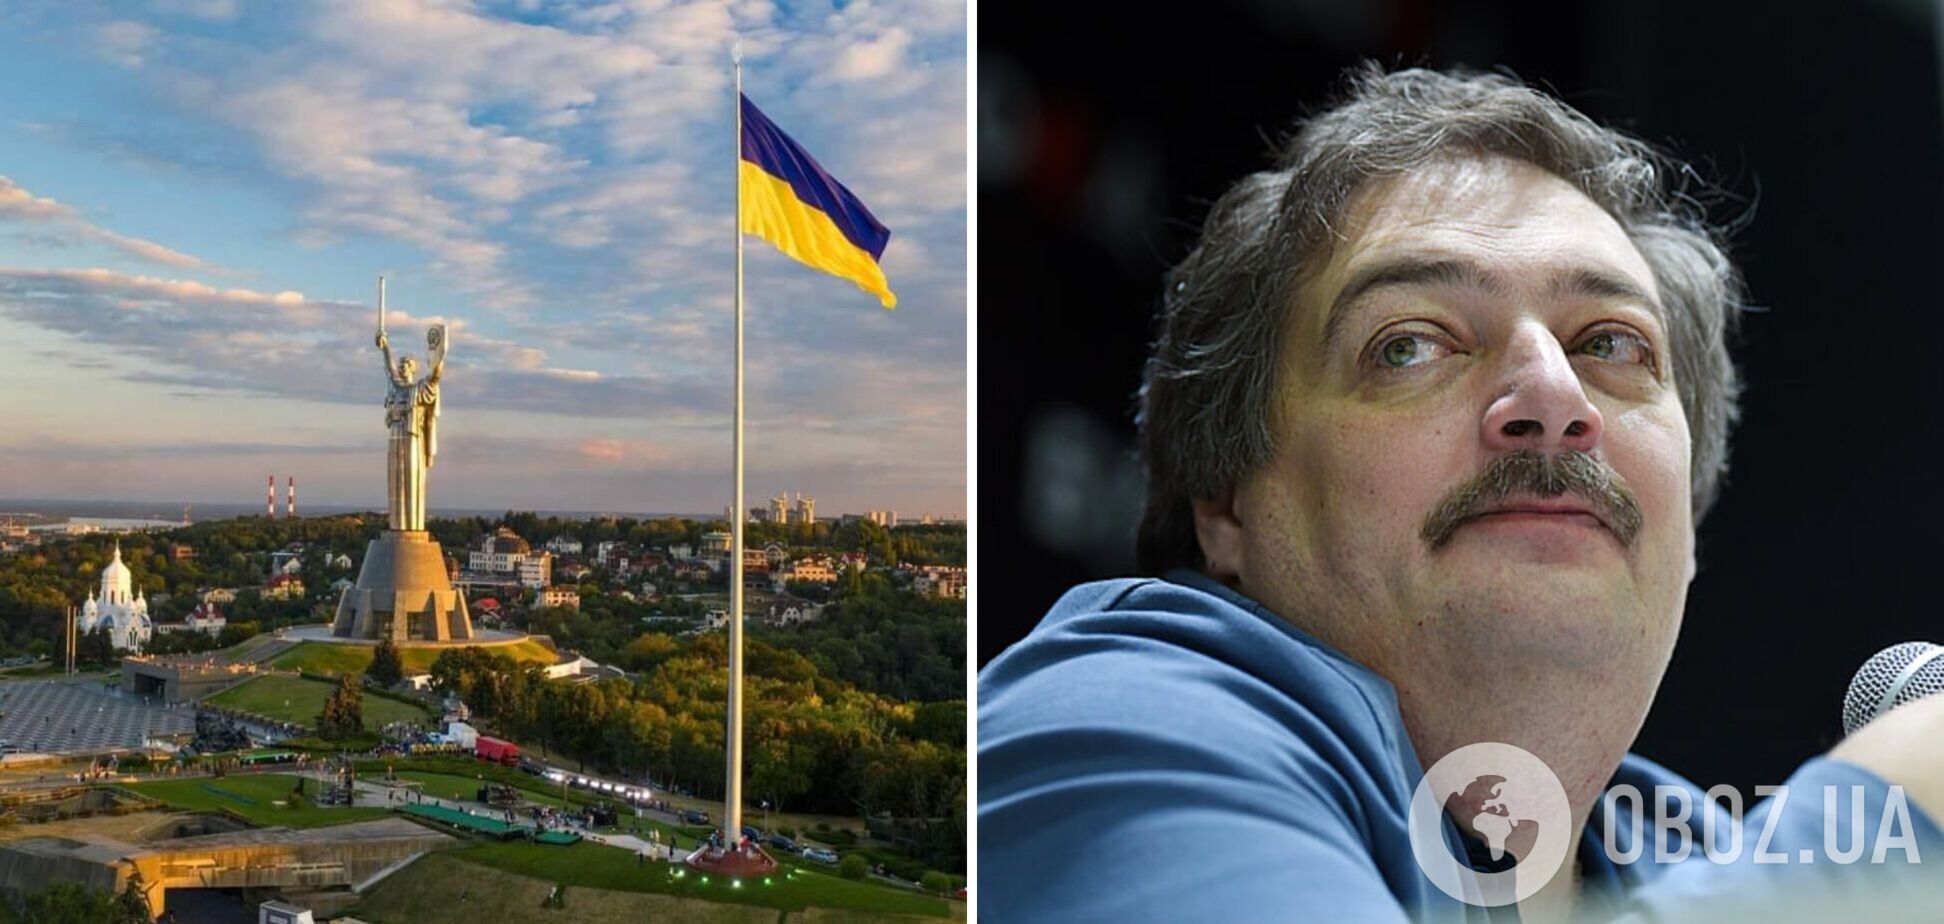 'Цинизм зашкаливает': в Киев приехал российский писатель Быков и разозлил украинцев